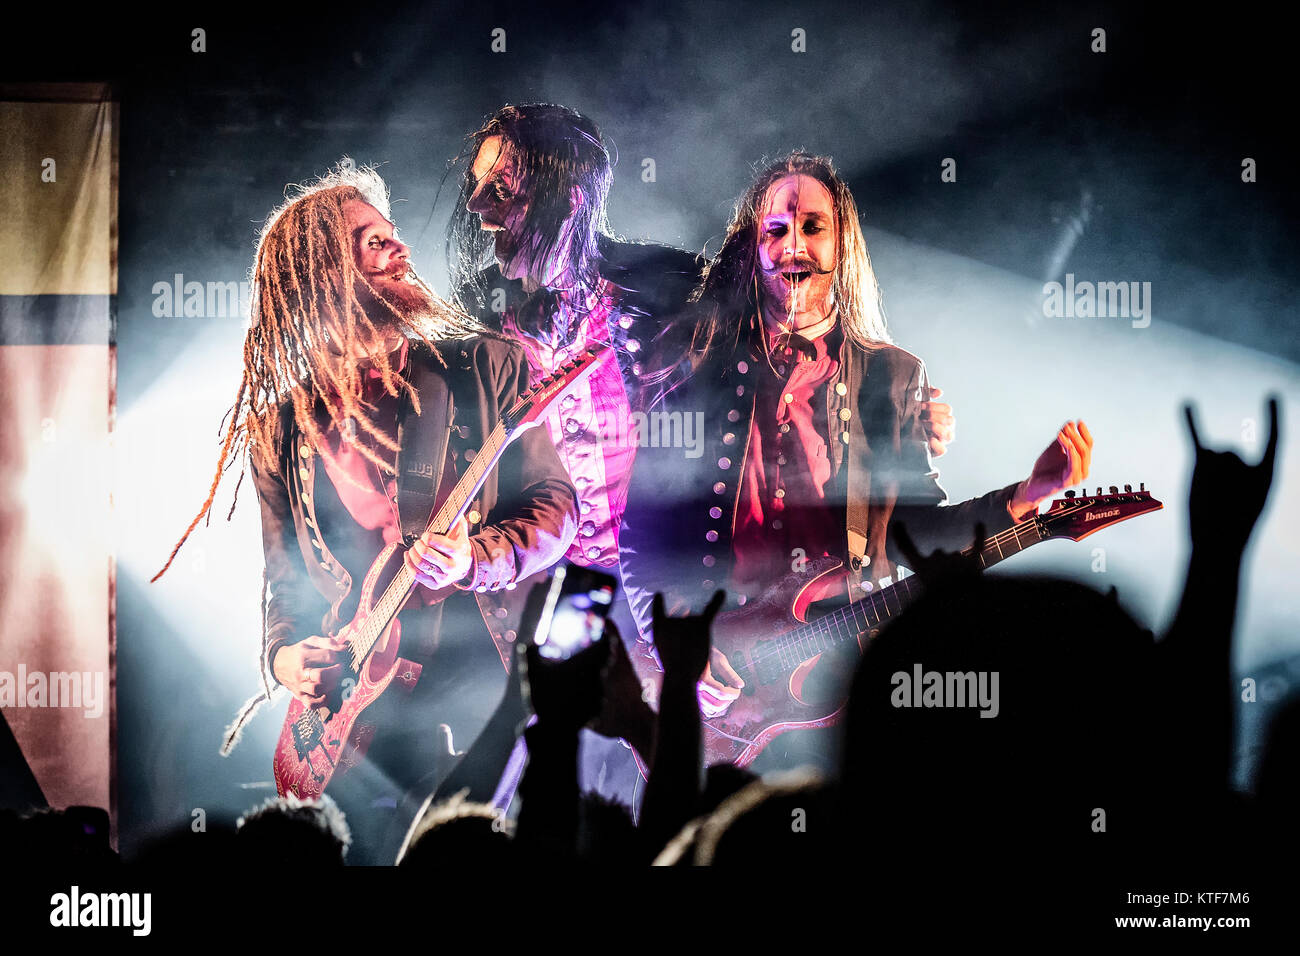 Le groupe de heavy metal suédois Avatar effectue un concert live à John Dee dans Oslo. Ici Eckerström chanteur Johannes est vu en direct sur scène avec le guitariste Jonas 'Kungen" Jarlsby (L) et Tim Öhrström (R). La Norvège, 14/12 2016. Banque D'Images